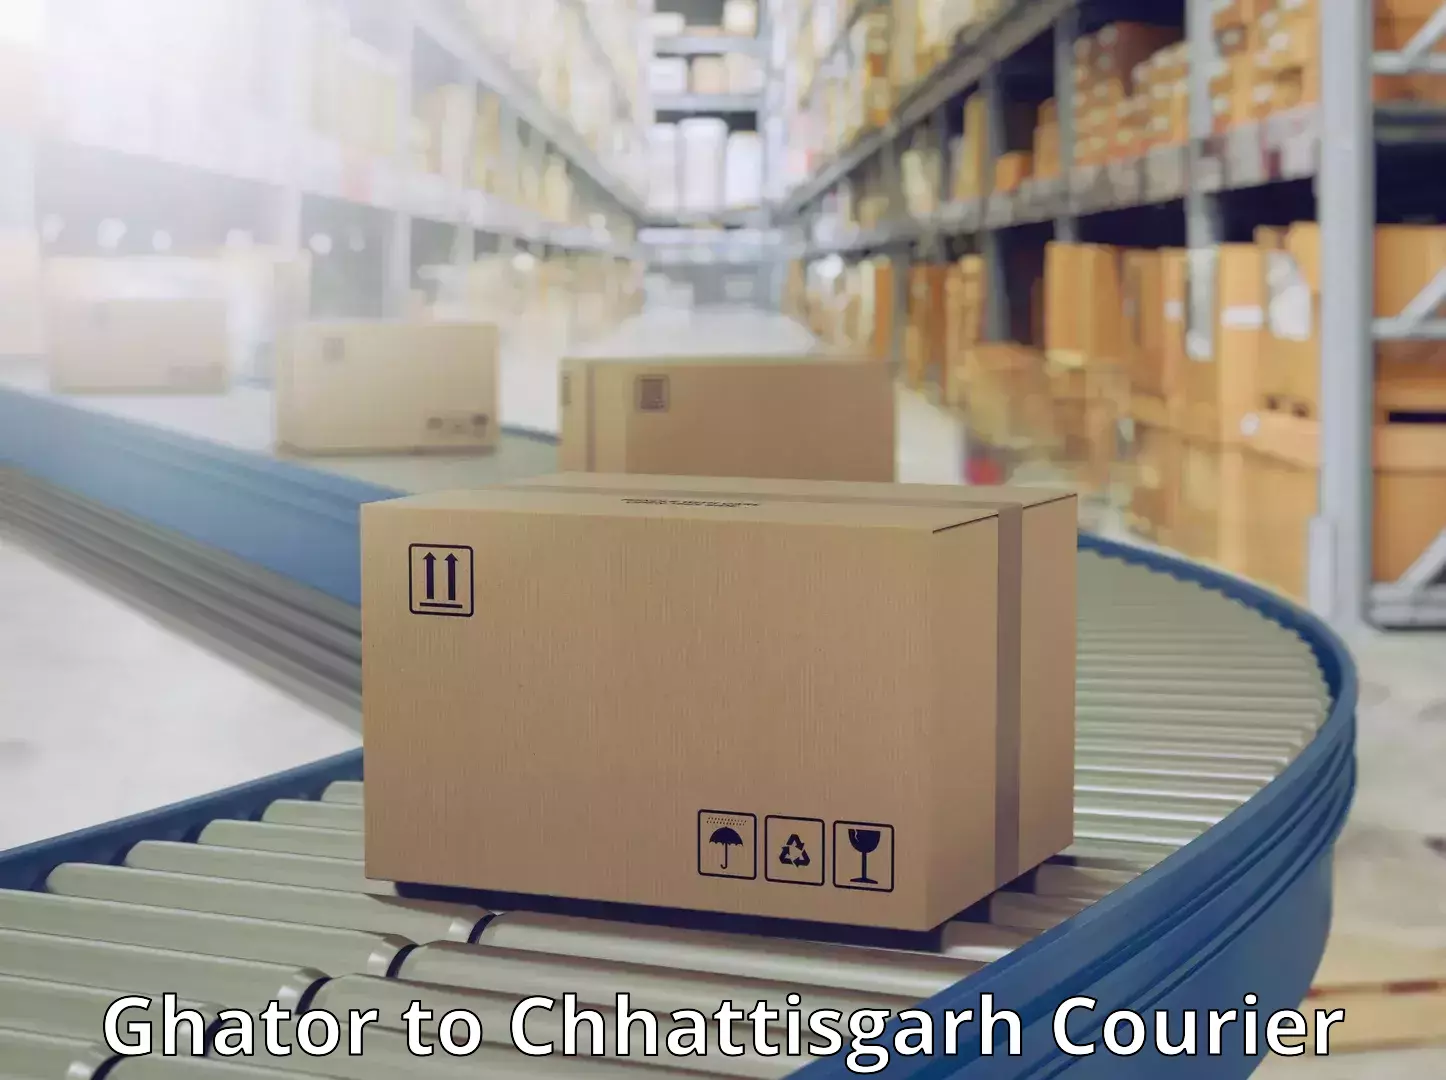 Efficient courier operations Ghator to Bijapur Chhattisgarh